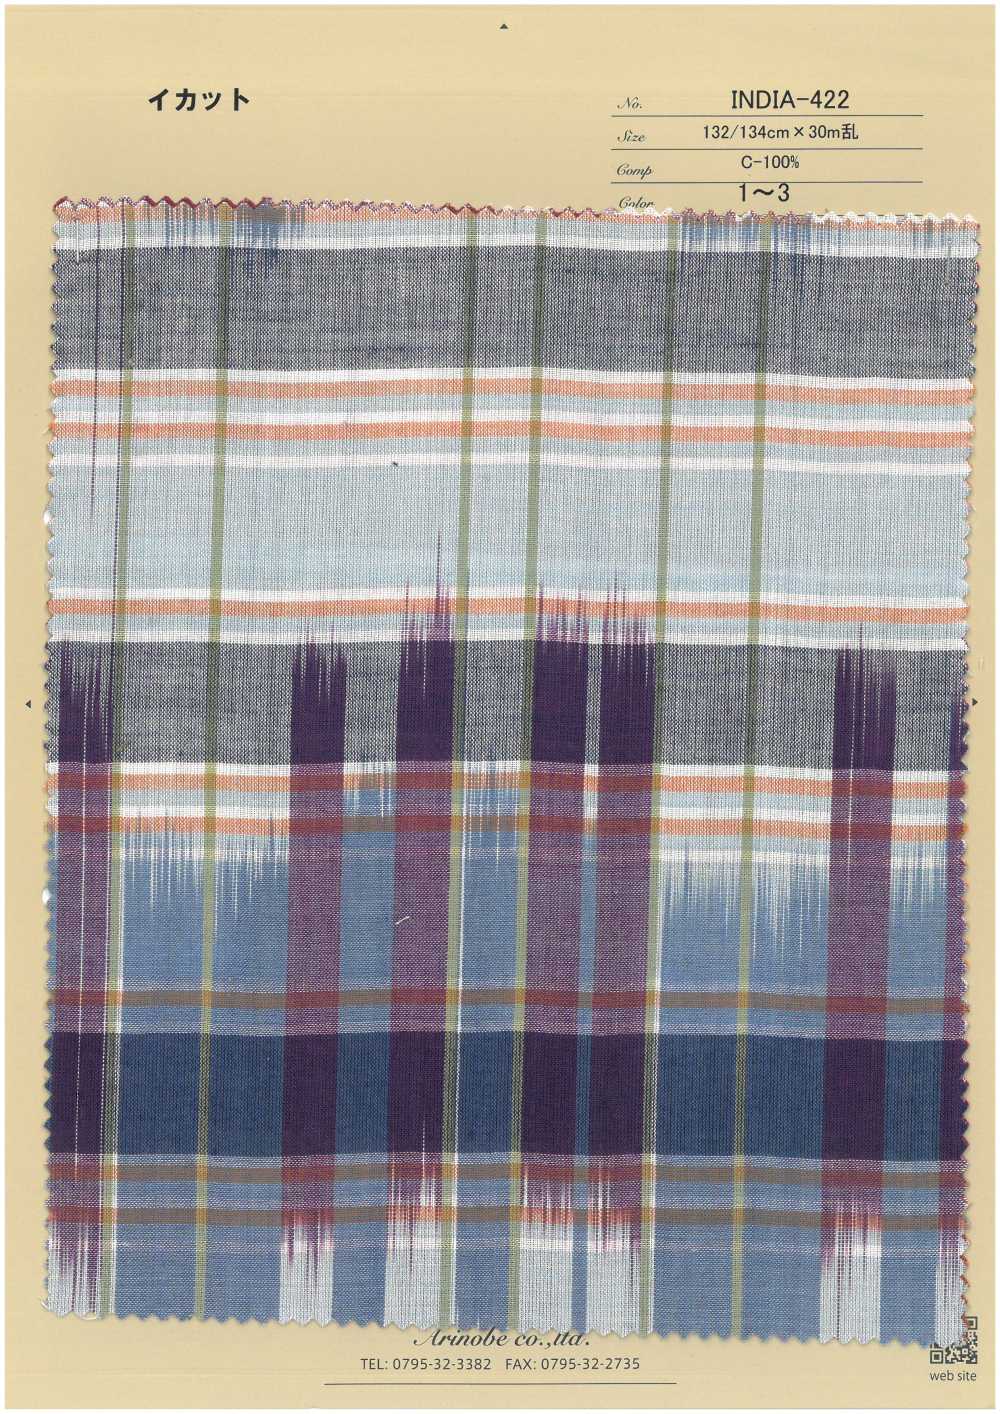 INDIA-422 Ikat[Fabrica Textil] ARINOBE CO., LTD.